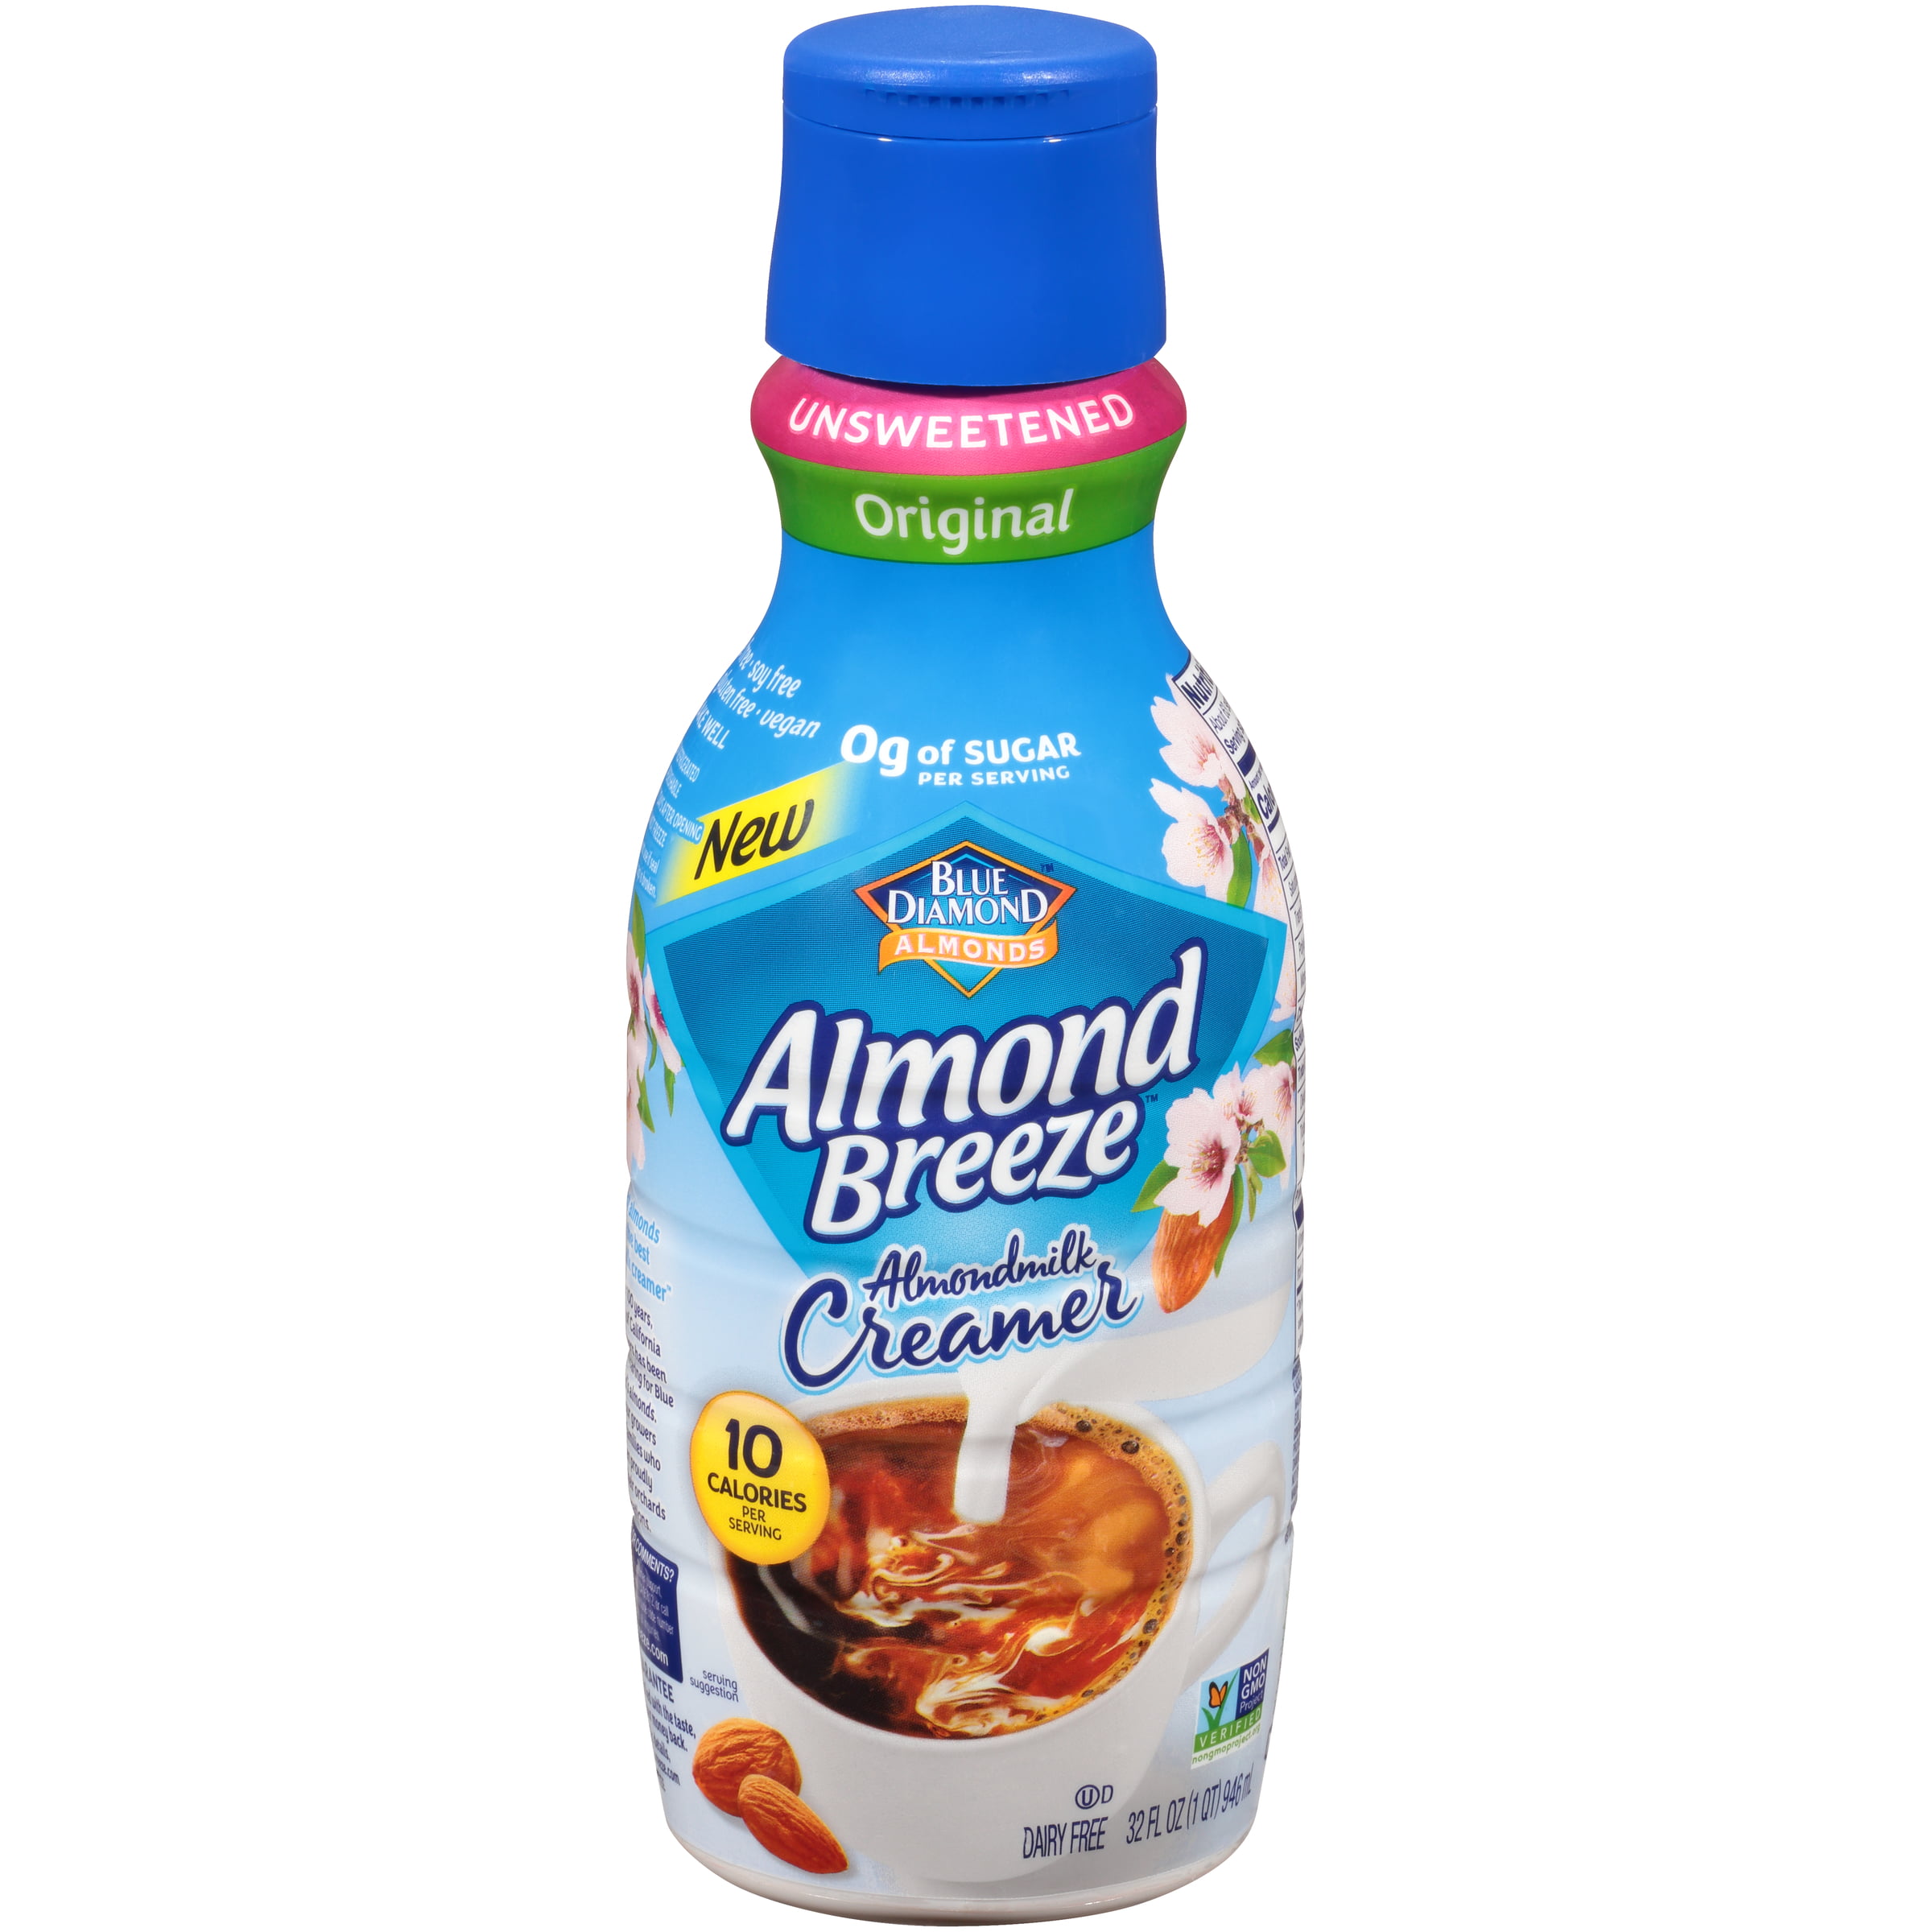 Almond Breeze Original Almond Creamer, 10 Quart   Walmart.com